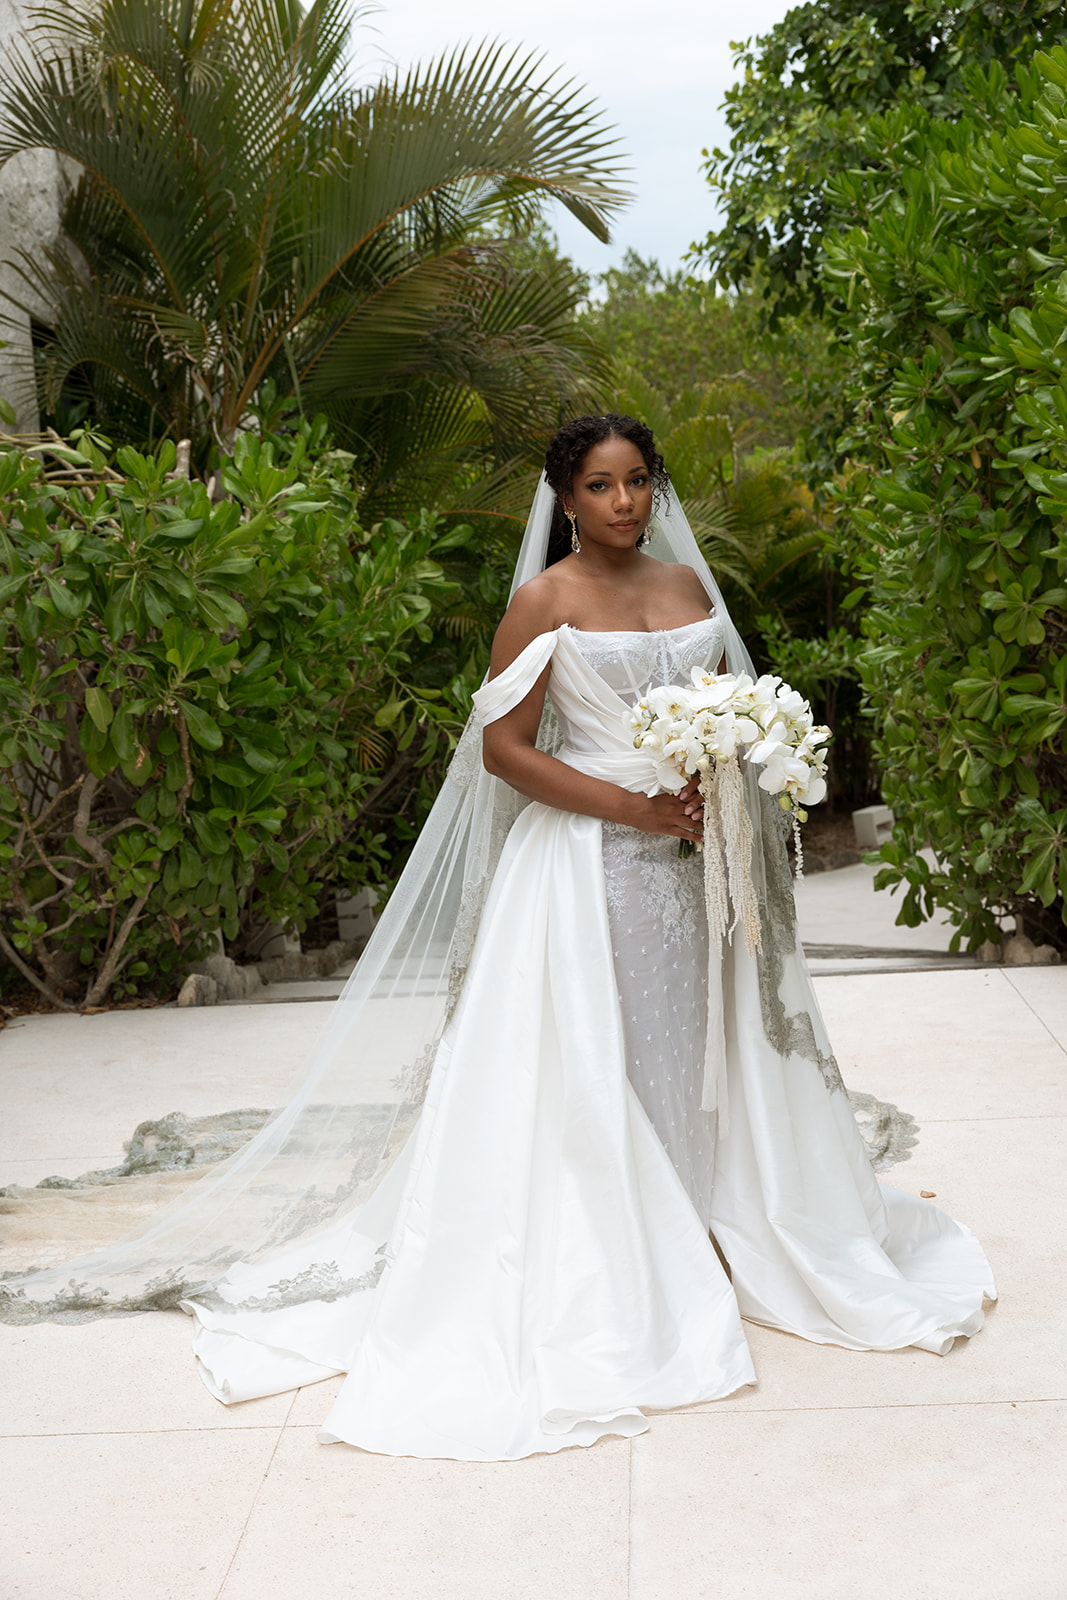 Lauren in a wedding dress
